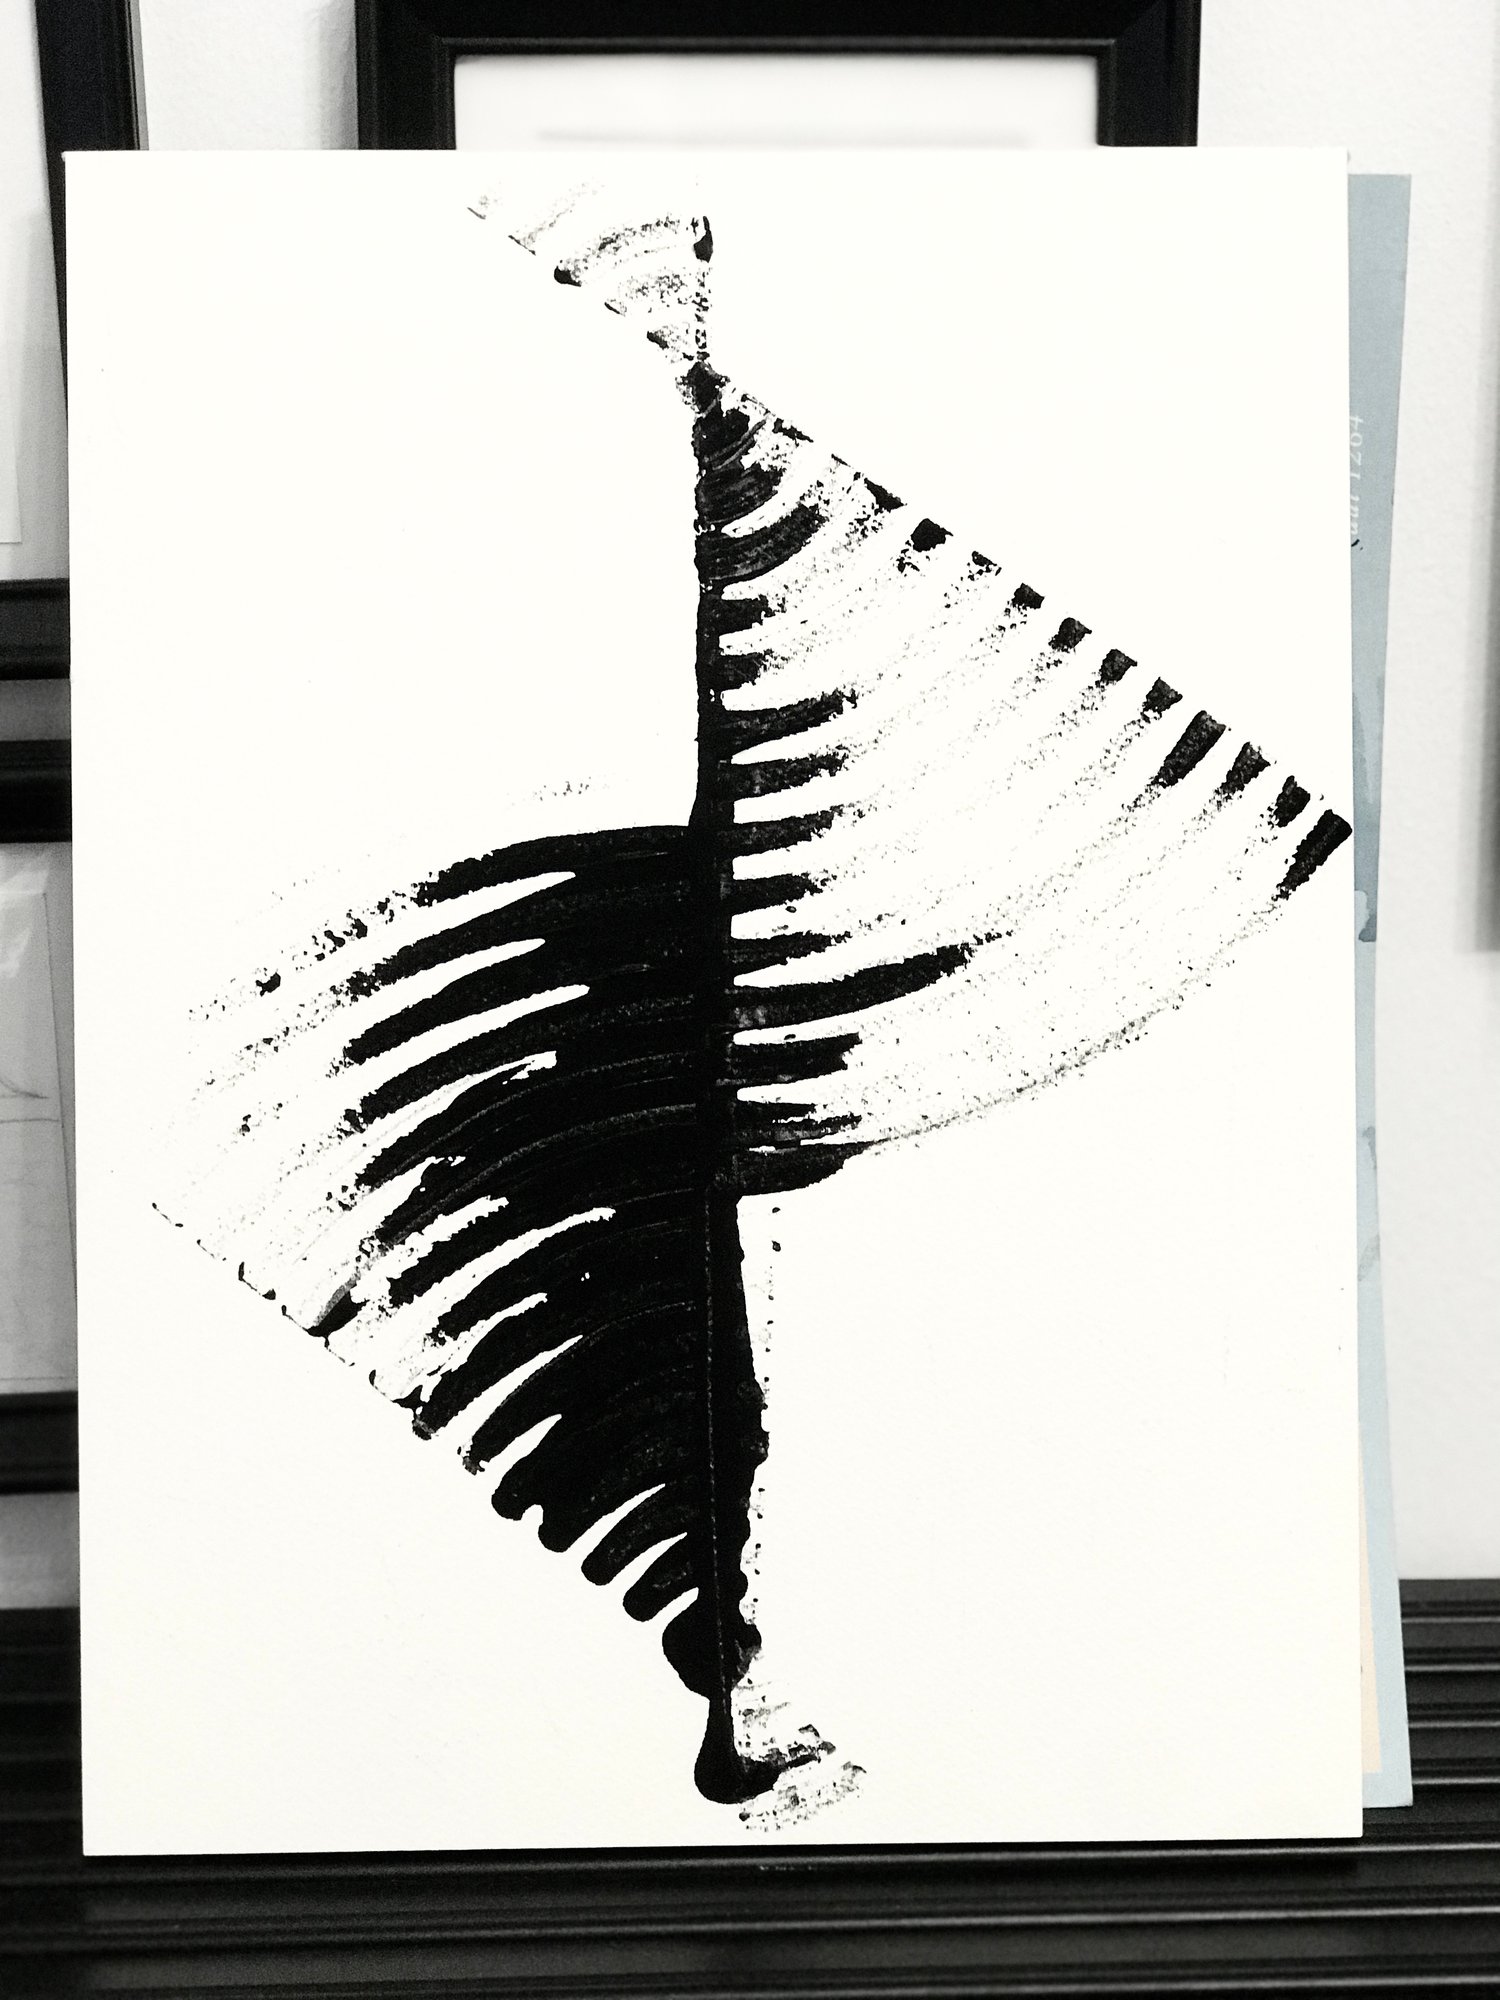 Equilibrium study - 23x30,5 cm, acrylic on 100% cotton aquarelle paper